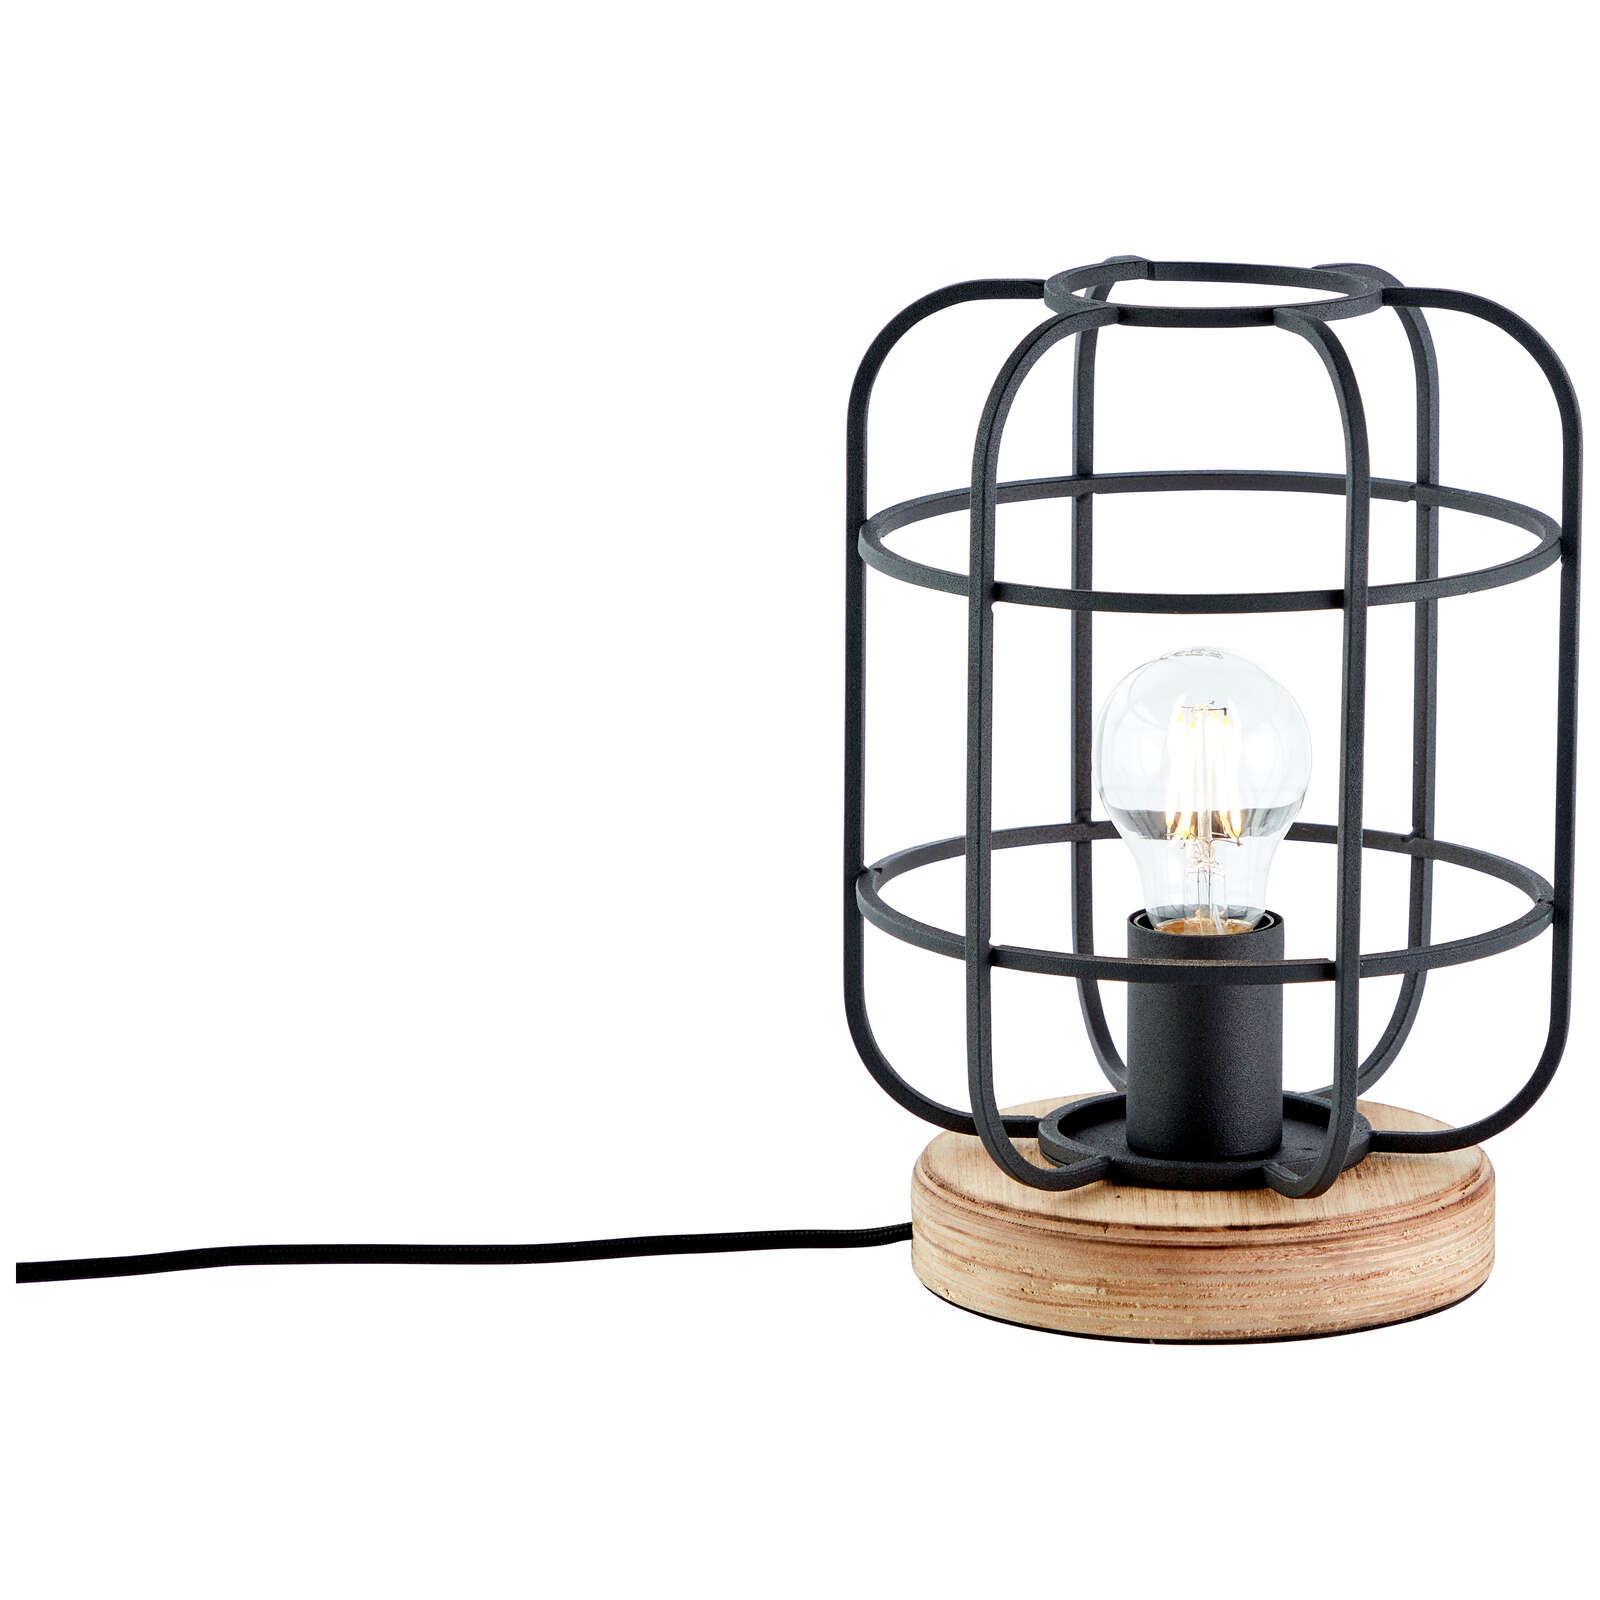             Wooden table lamp - Inga 3 - Brown
        